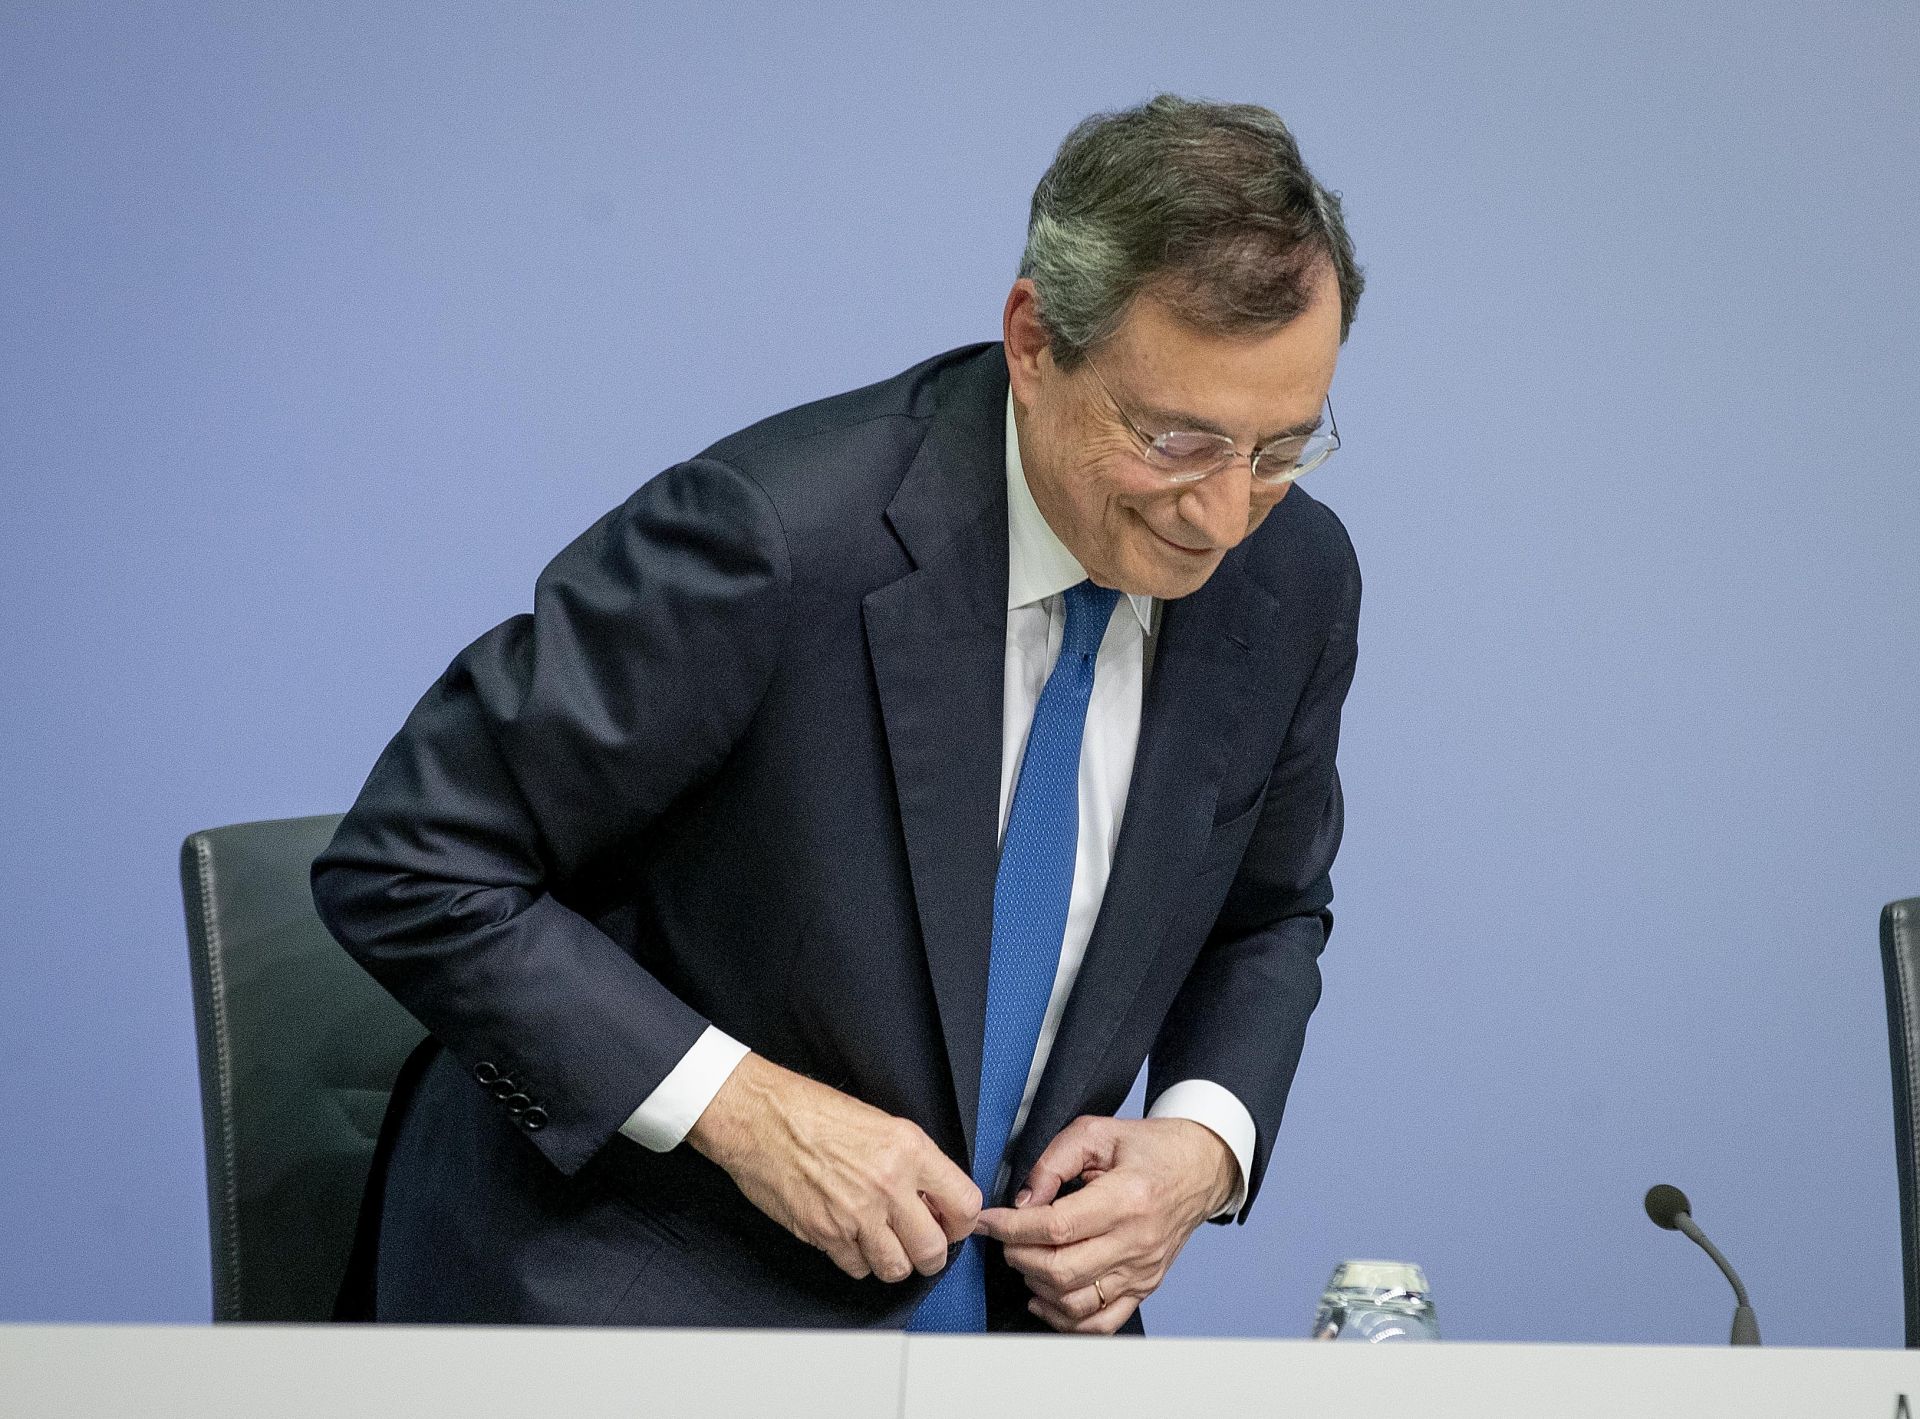 Драги бе президент на ЕЦБ от 2011 до края на октомври миналата година